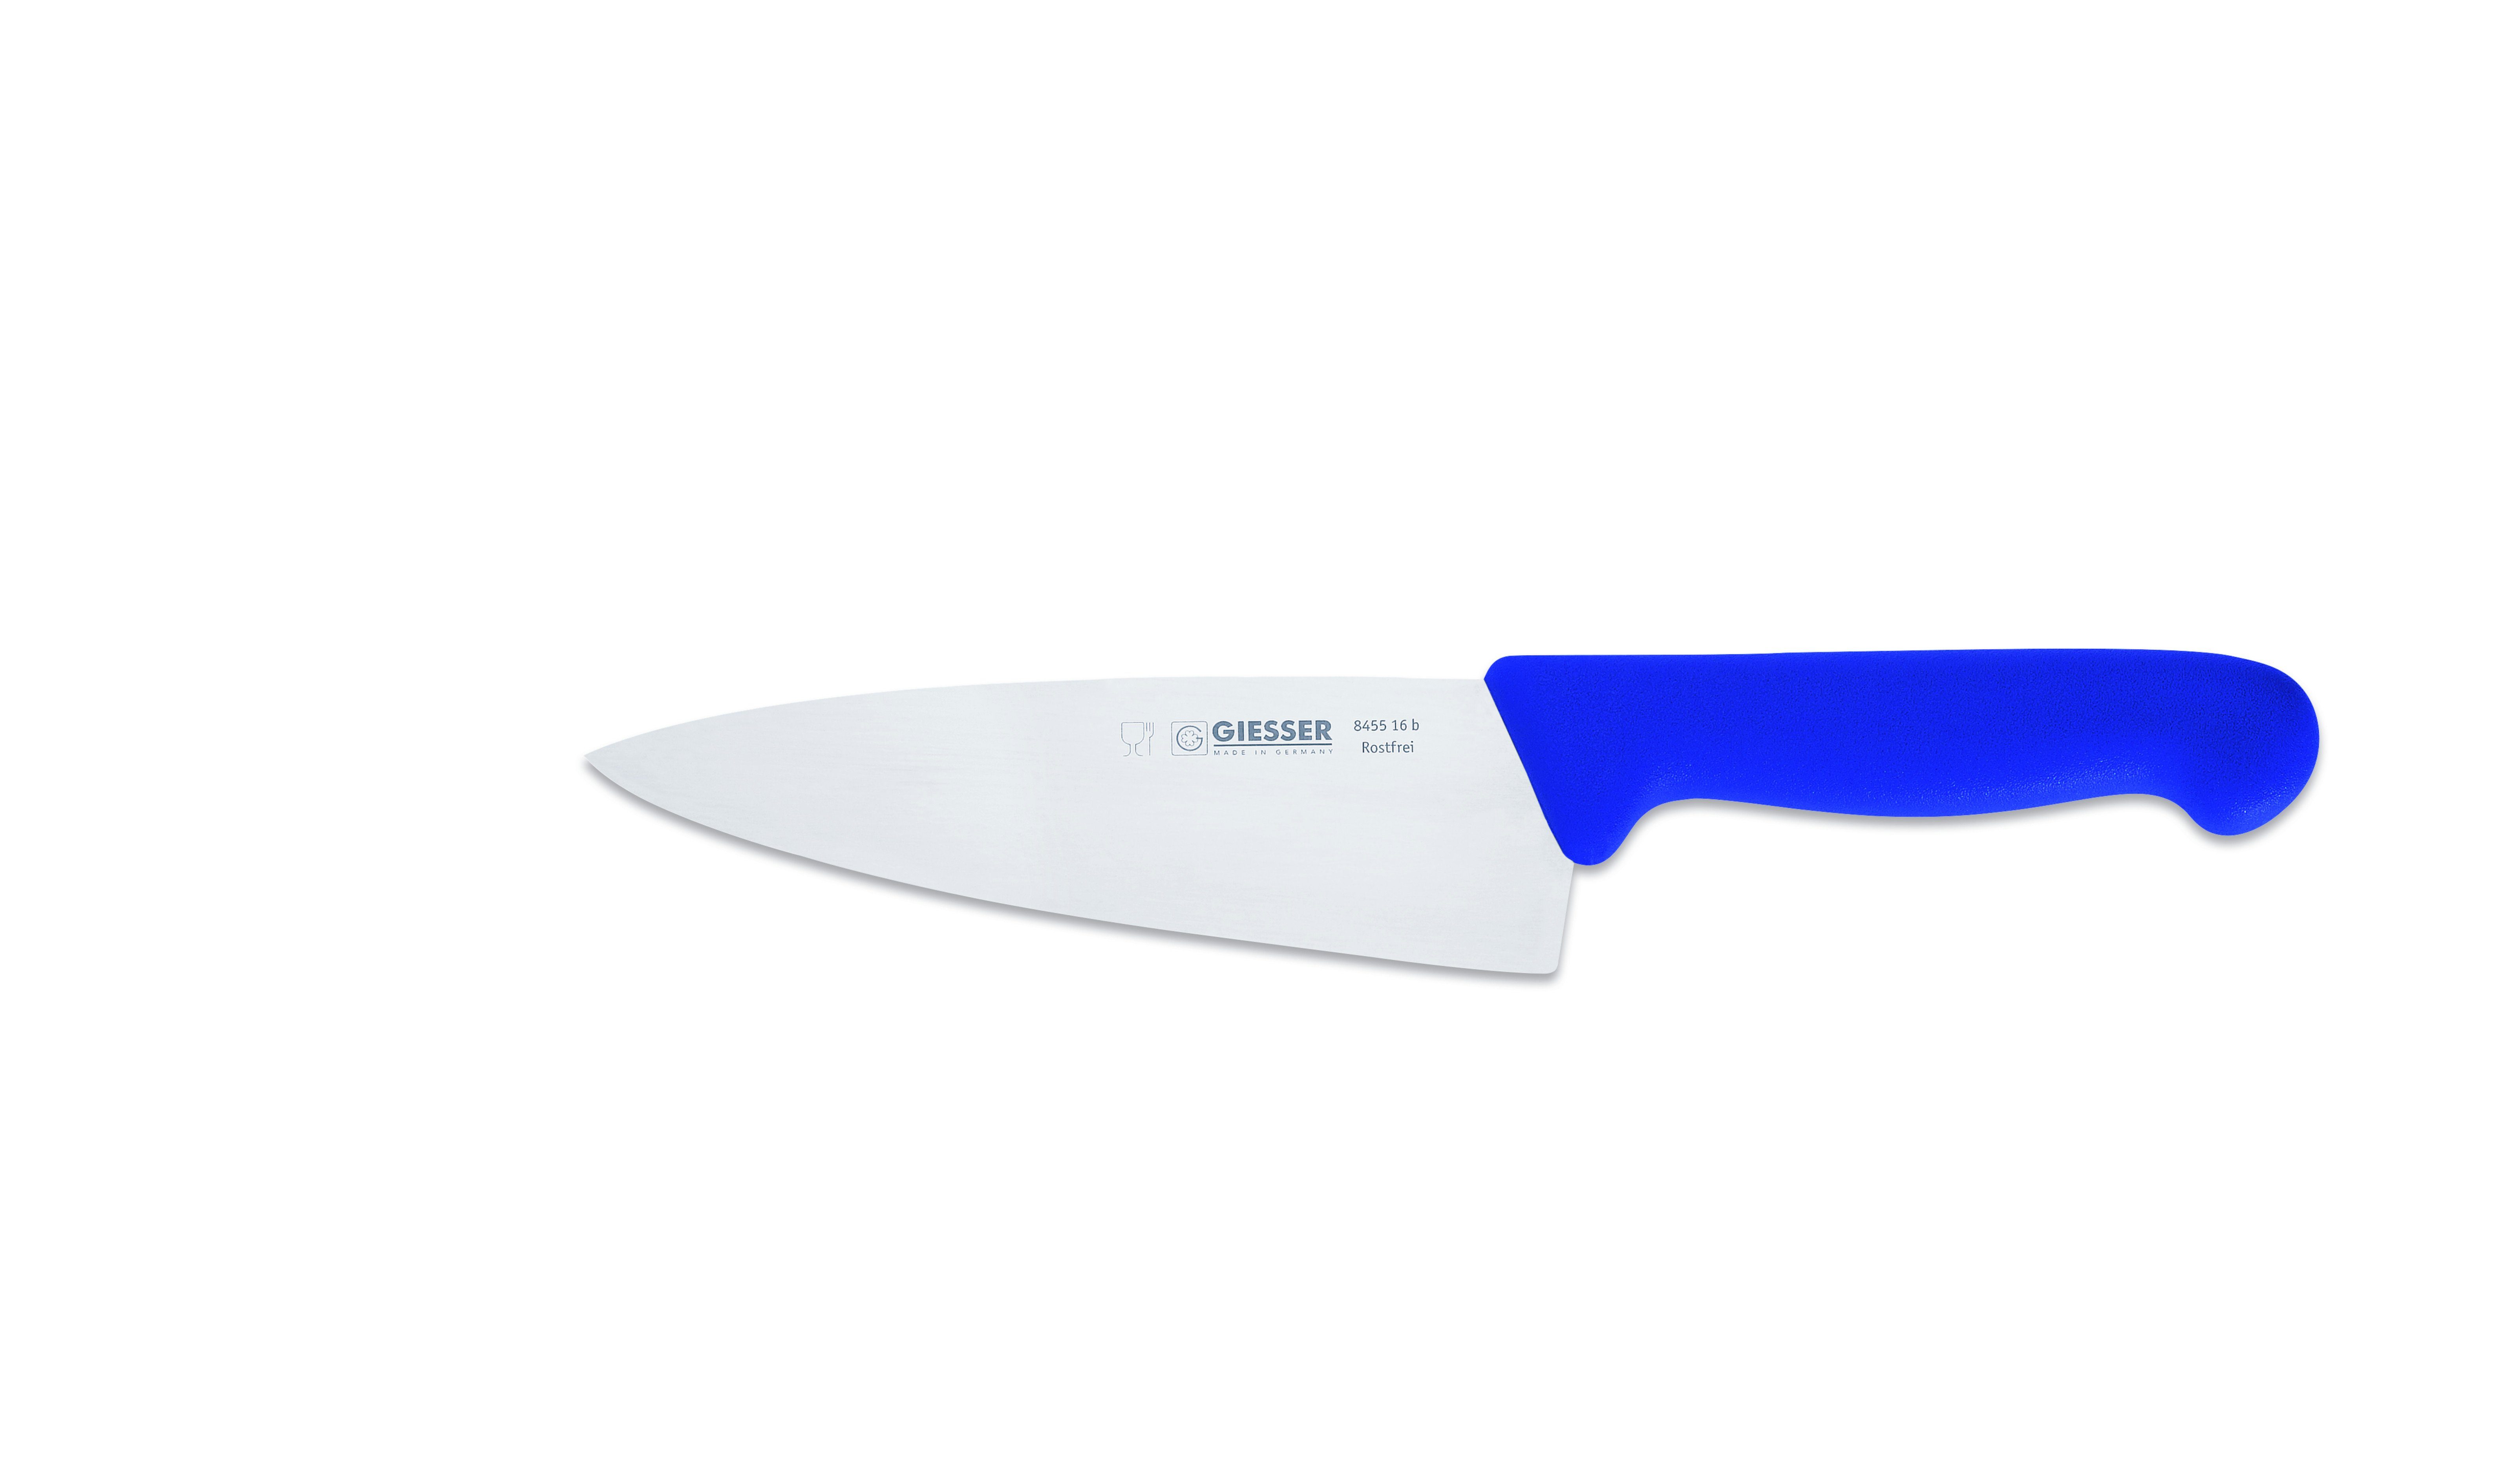 Giesser Messer Kochmesser Küchenmesser breit 8455, Rostfrei, breite Form, scharf, Handabzug, Ideal für jede Küche blau